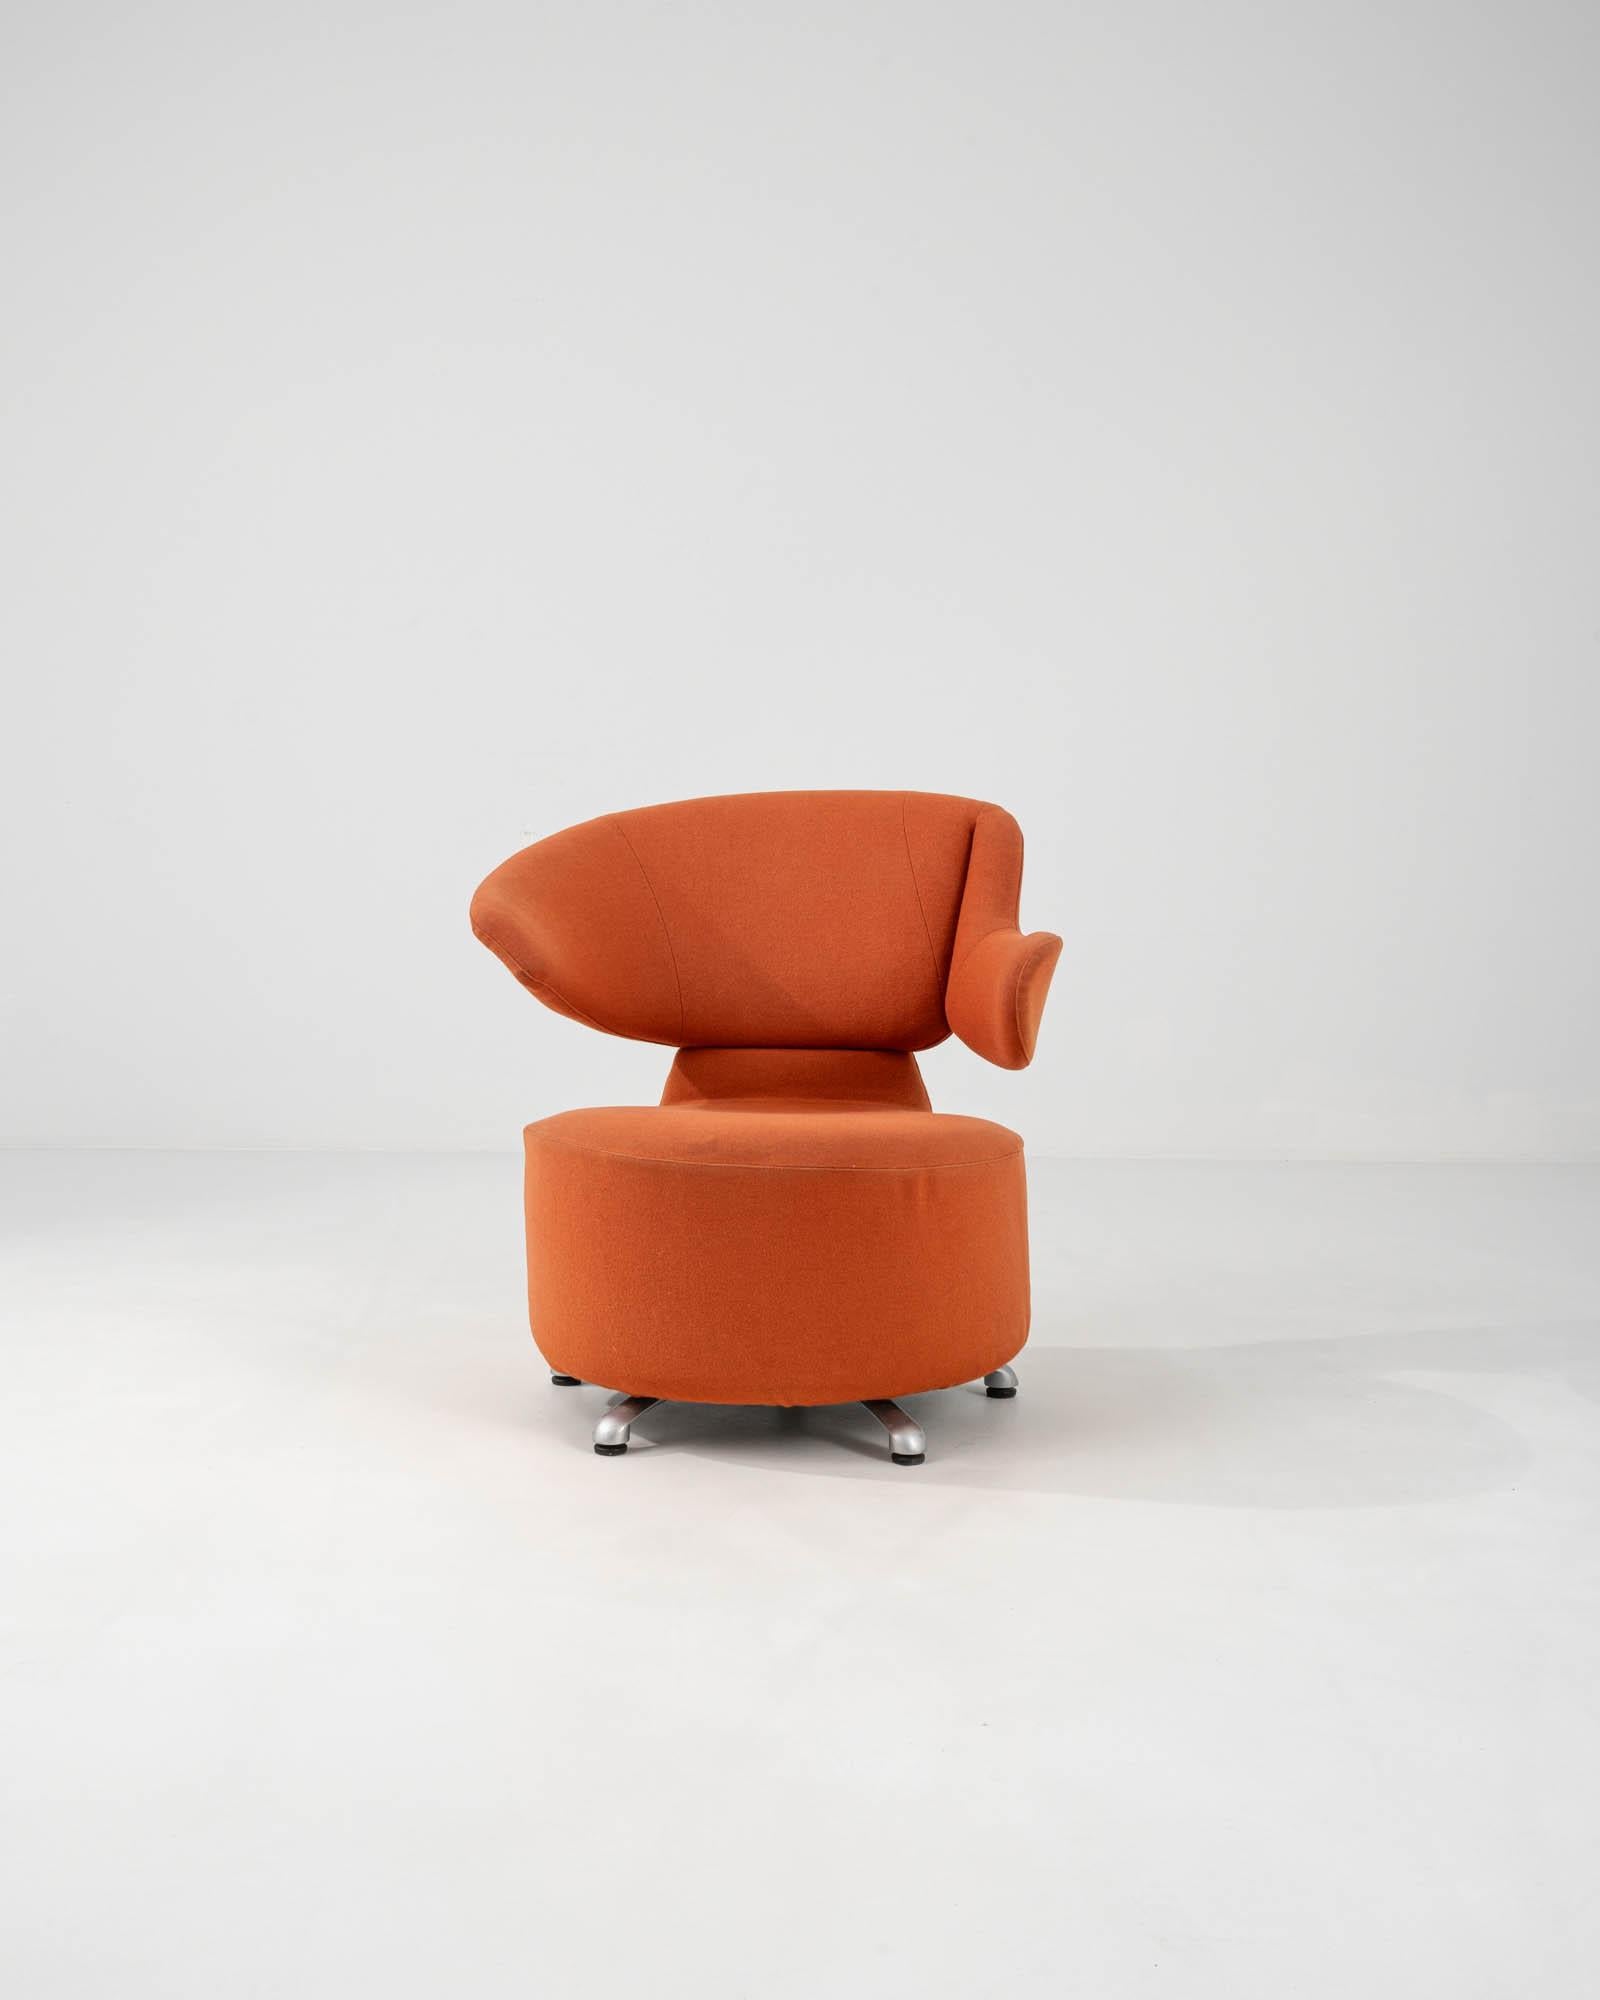 Embrassez la fusion de l'artisanat italien et du design innovant avec ce fauteuil pivotant italien du XXe siècle de Cassina. Son revêtement audacieux en terre cuite rayonne de chaleur et ajoute une touche de couleur à n'importe quel intérieur. Avec